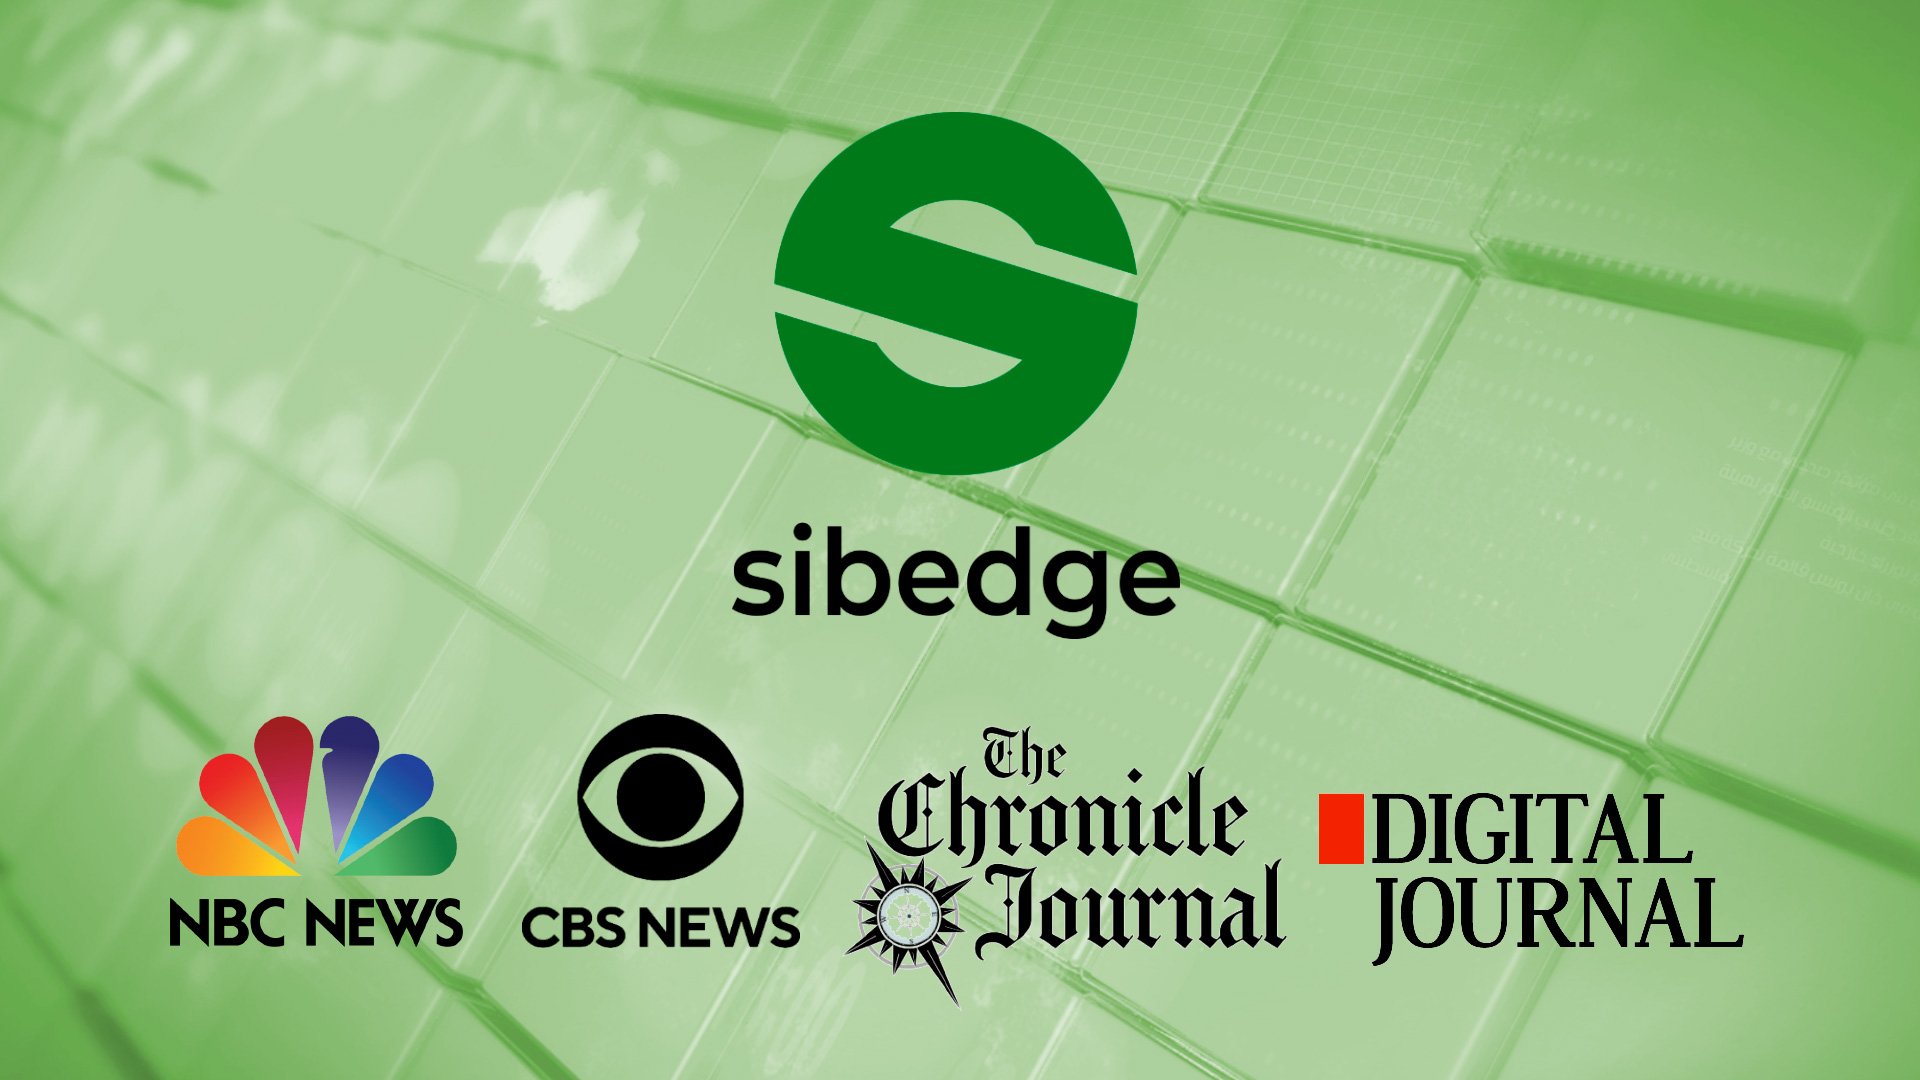 О сервисной архитектуре Sibedge рассказали на NBC News